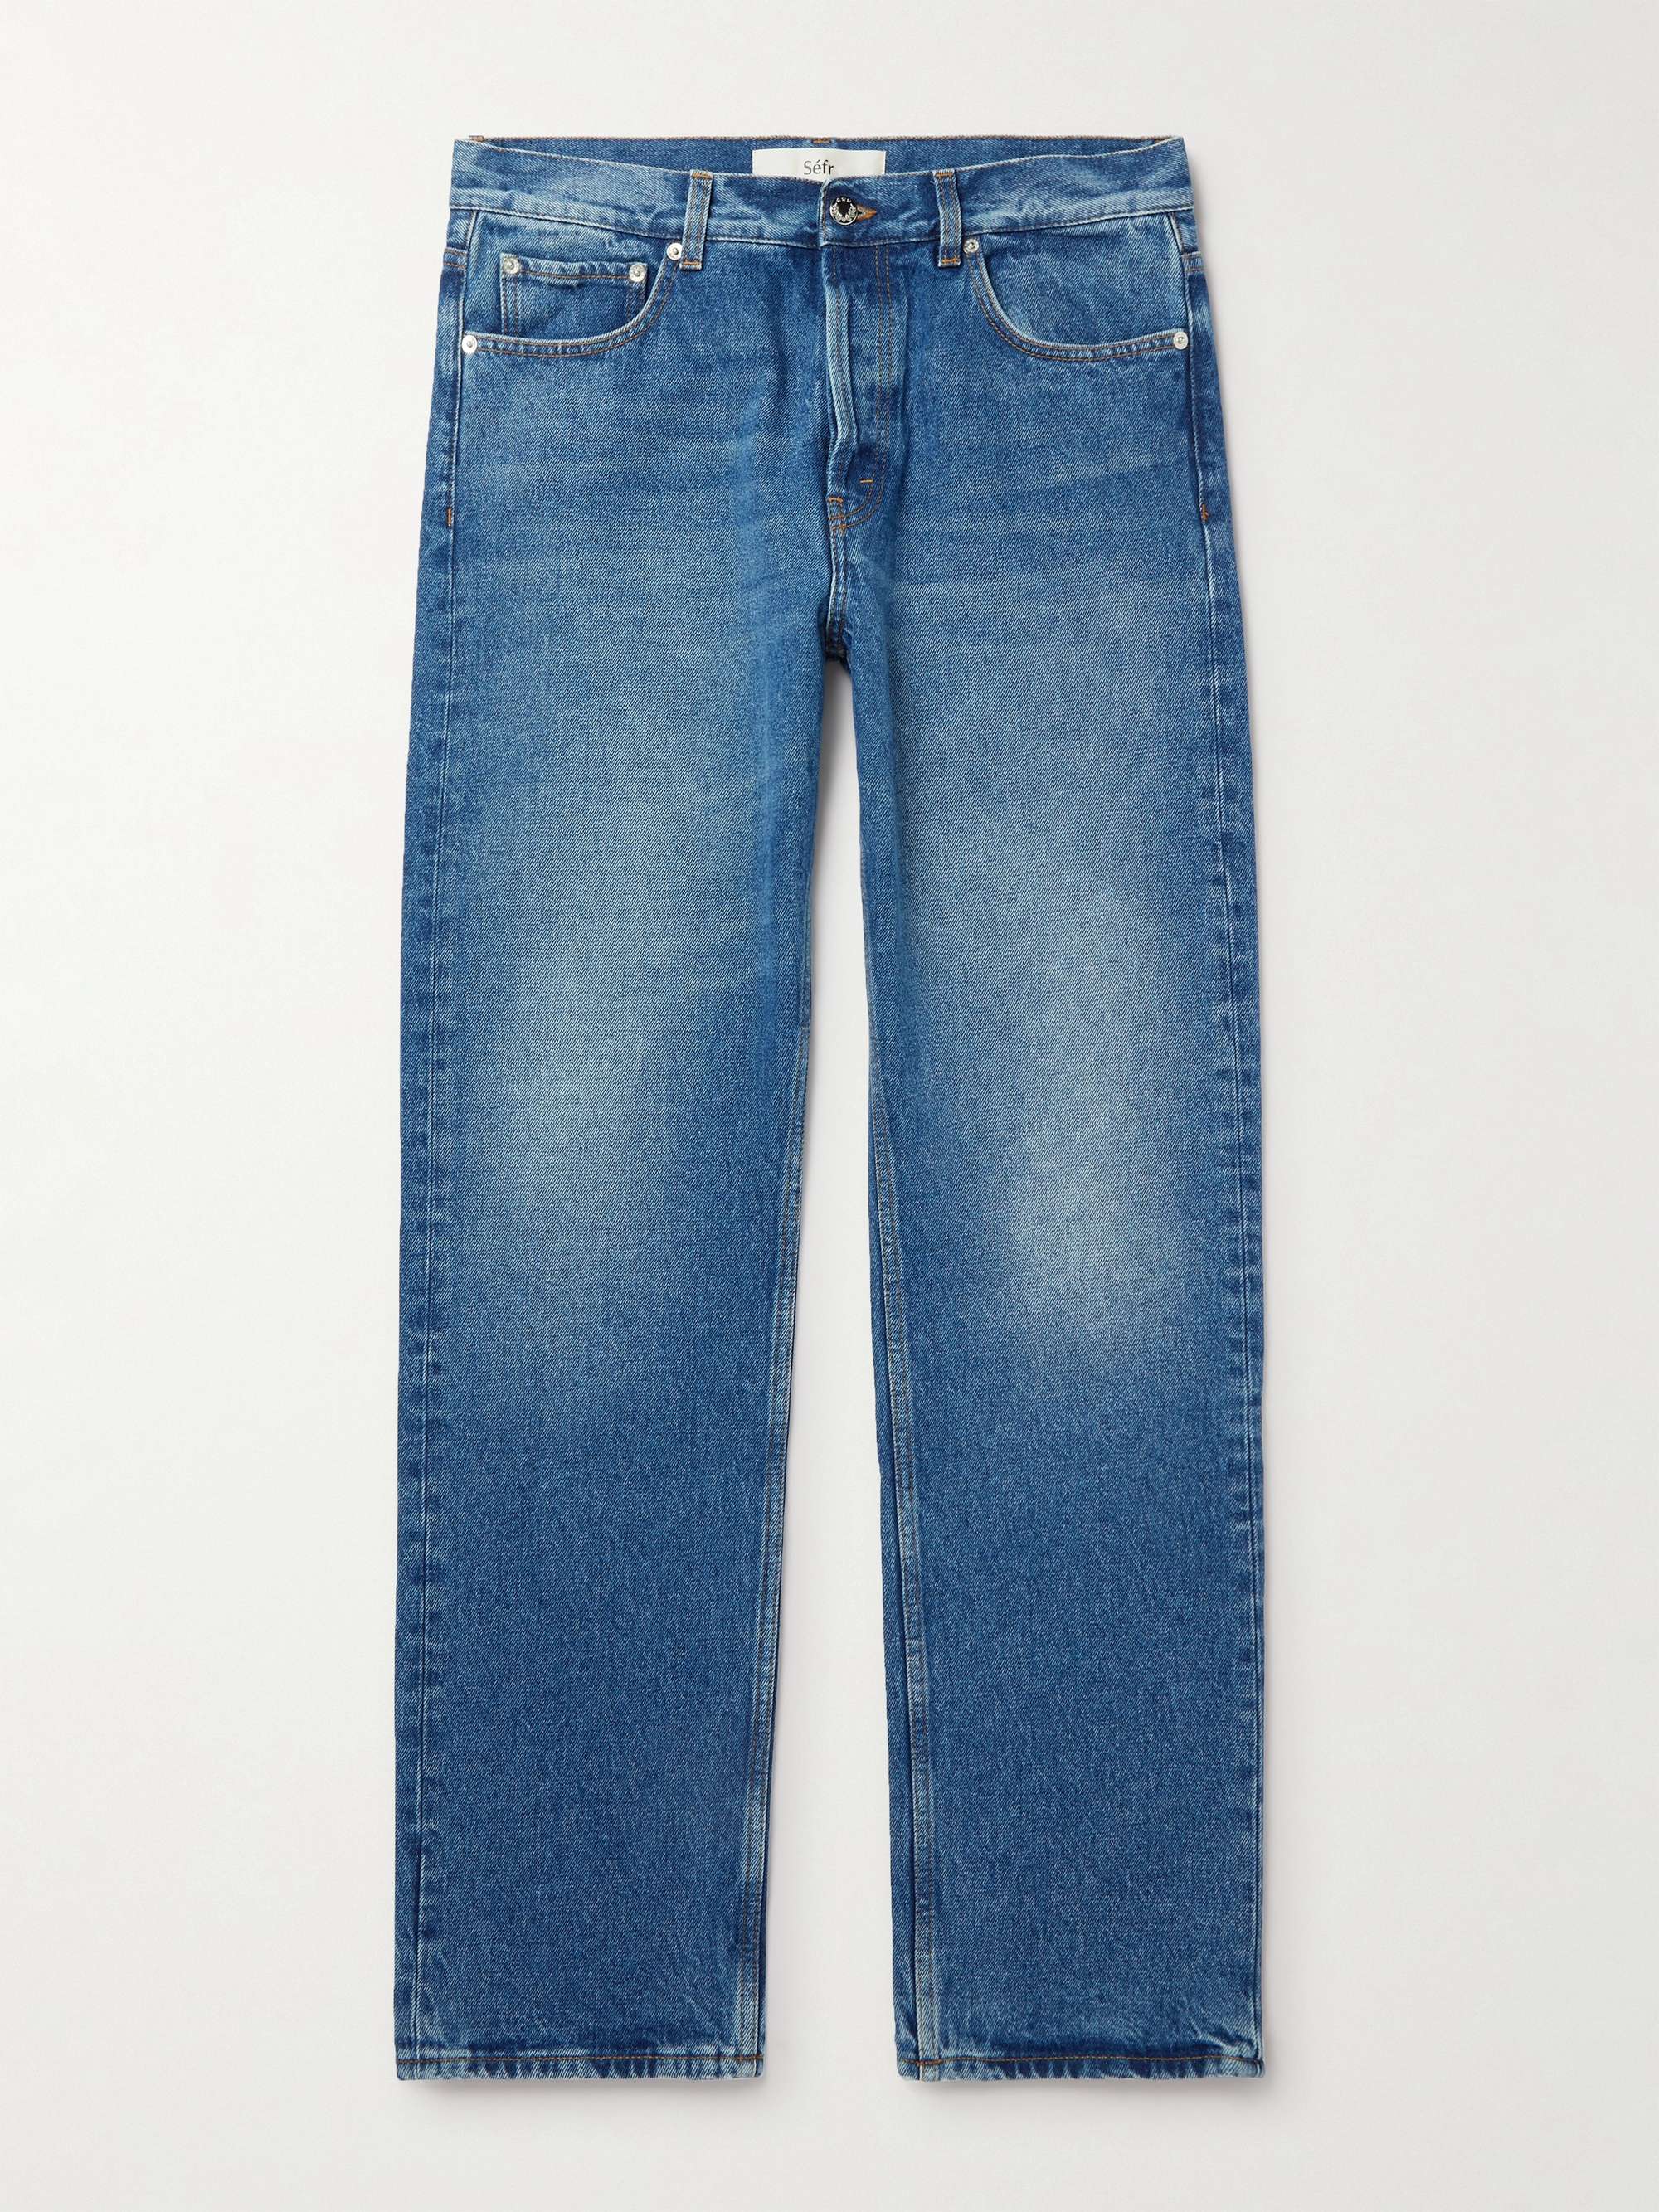 SÉFR Jeans for Men | MR PORTER